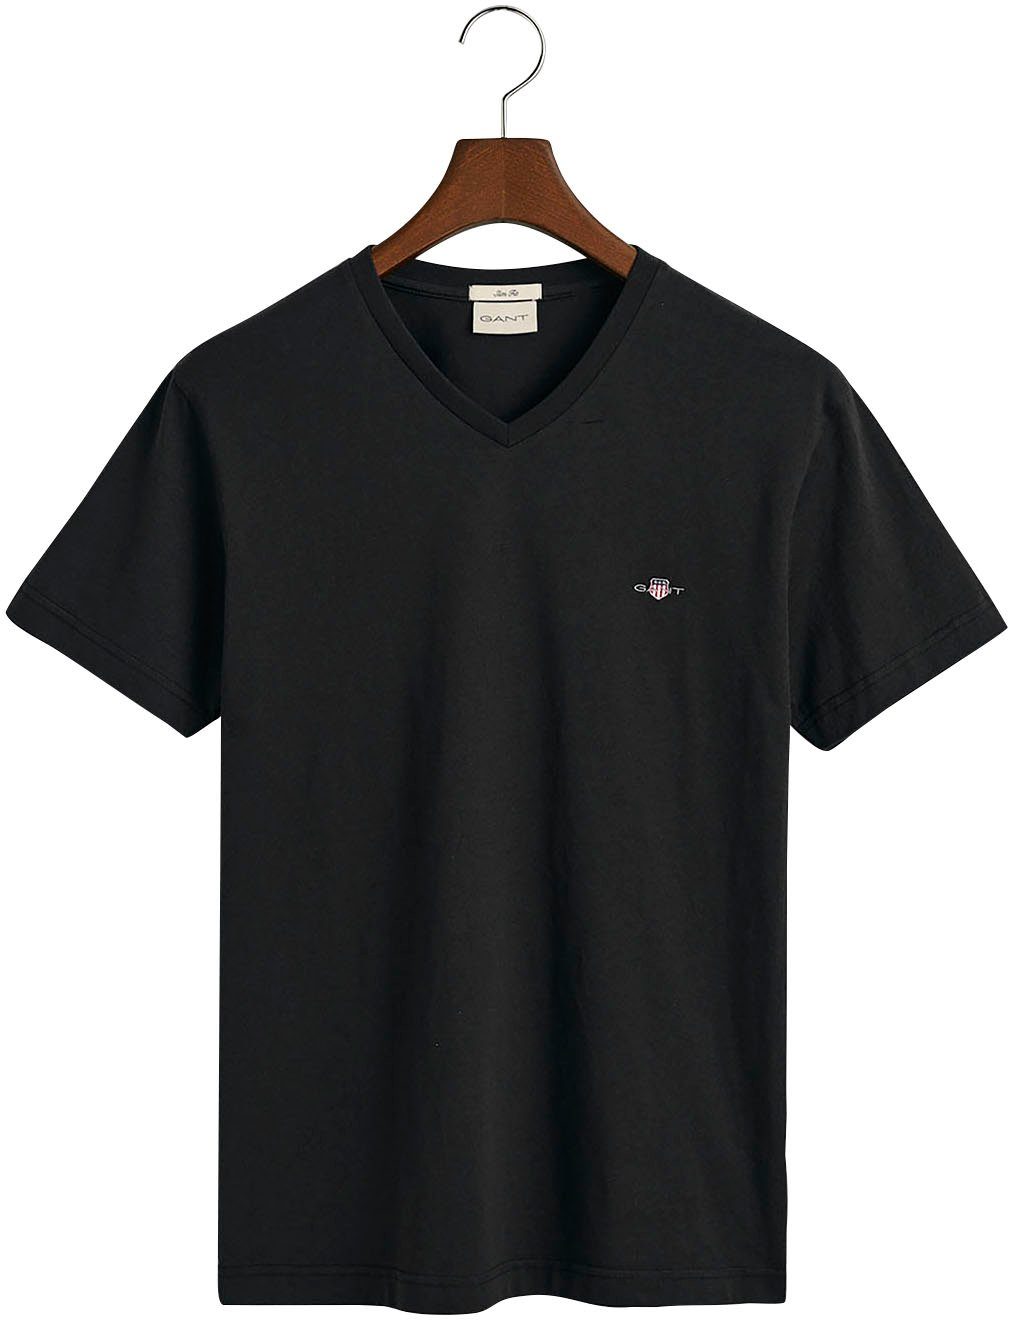 Gant T-Shirt SLIM SHIELD einer mit black V-NECK T-SHIRT Brust kleinen Logostickerei auf der